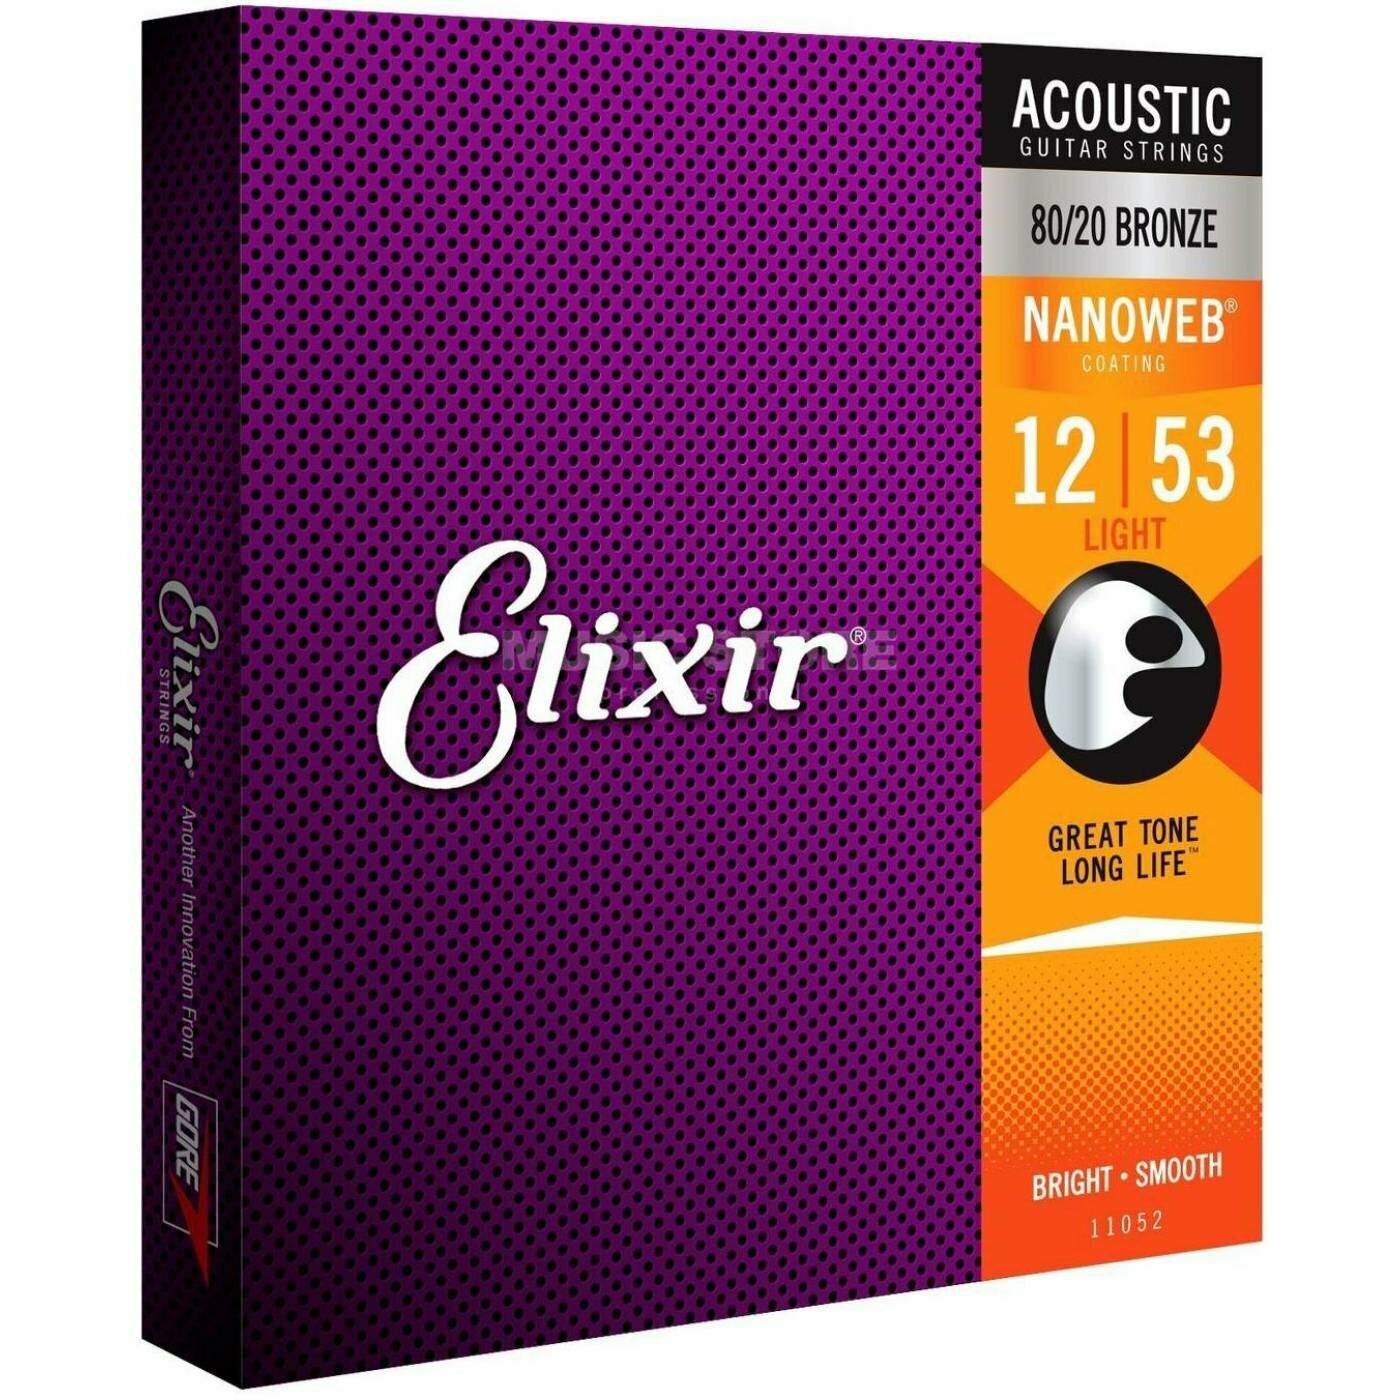 Струны для акустической гитары ELIXIR 11052 NANOWEB, калибр 12-53, бронза 80/20